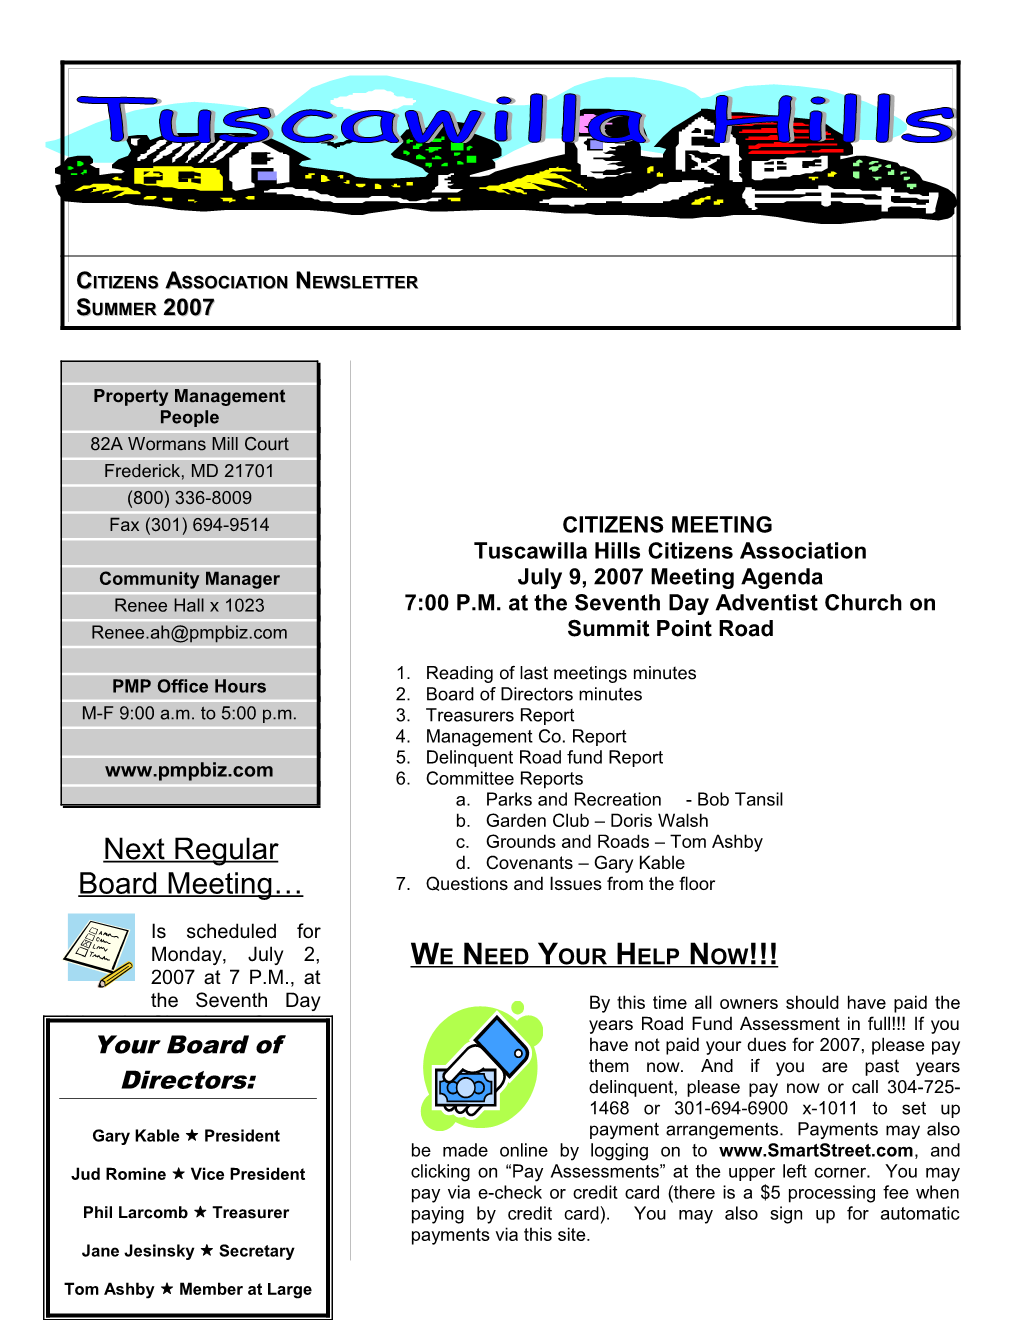 Citizens Association Newsletter Summer2007